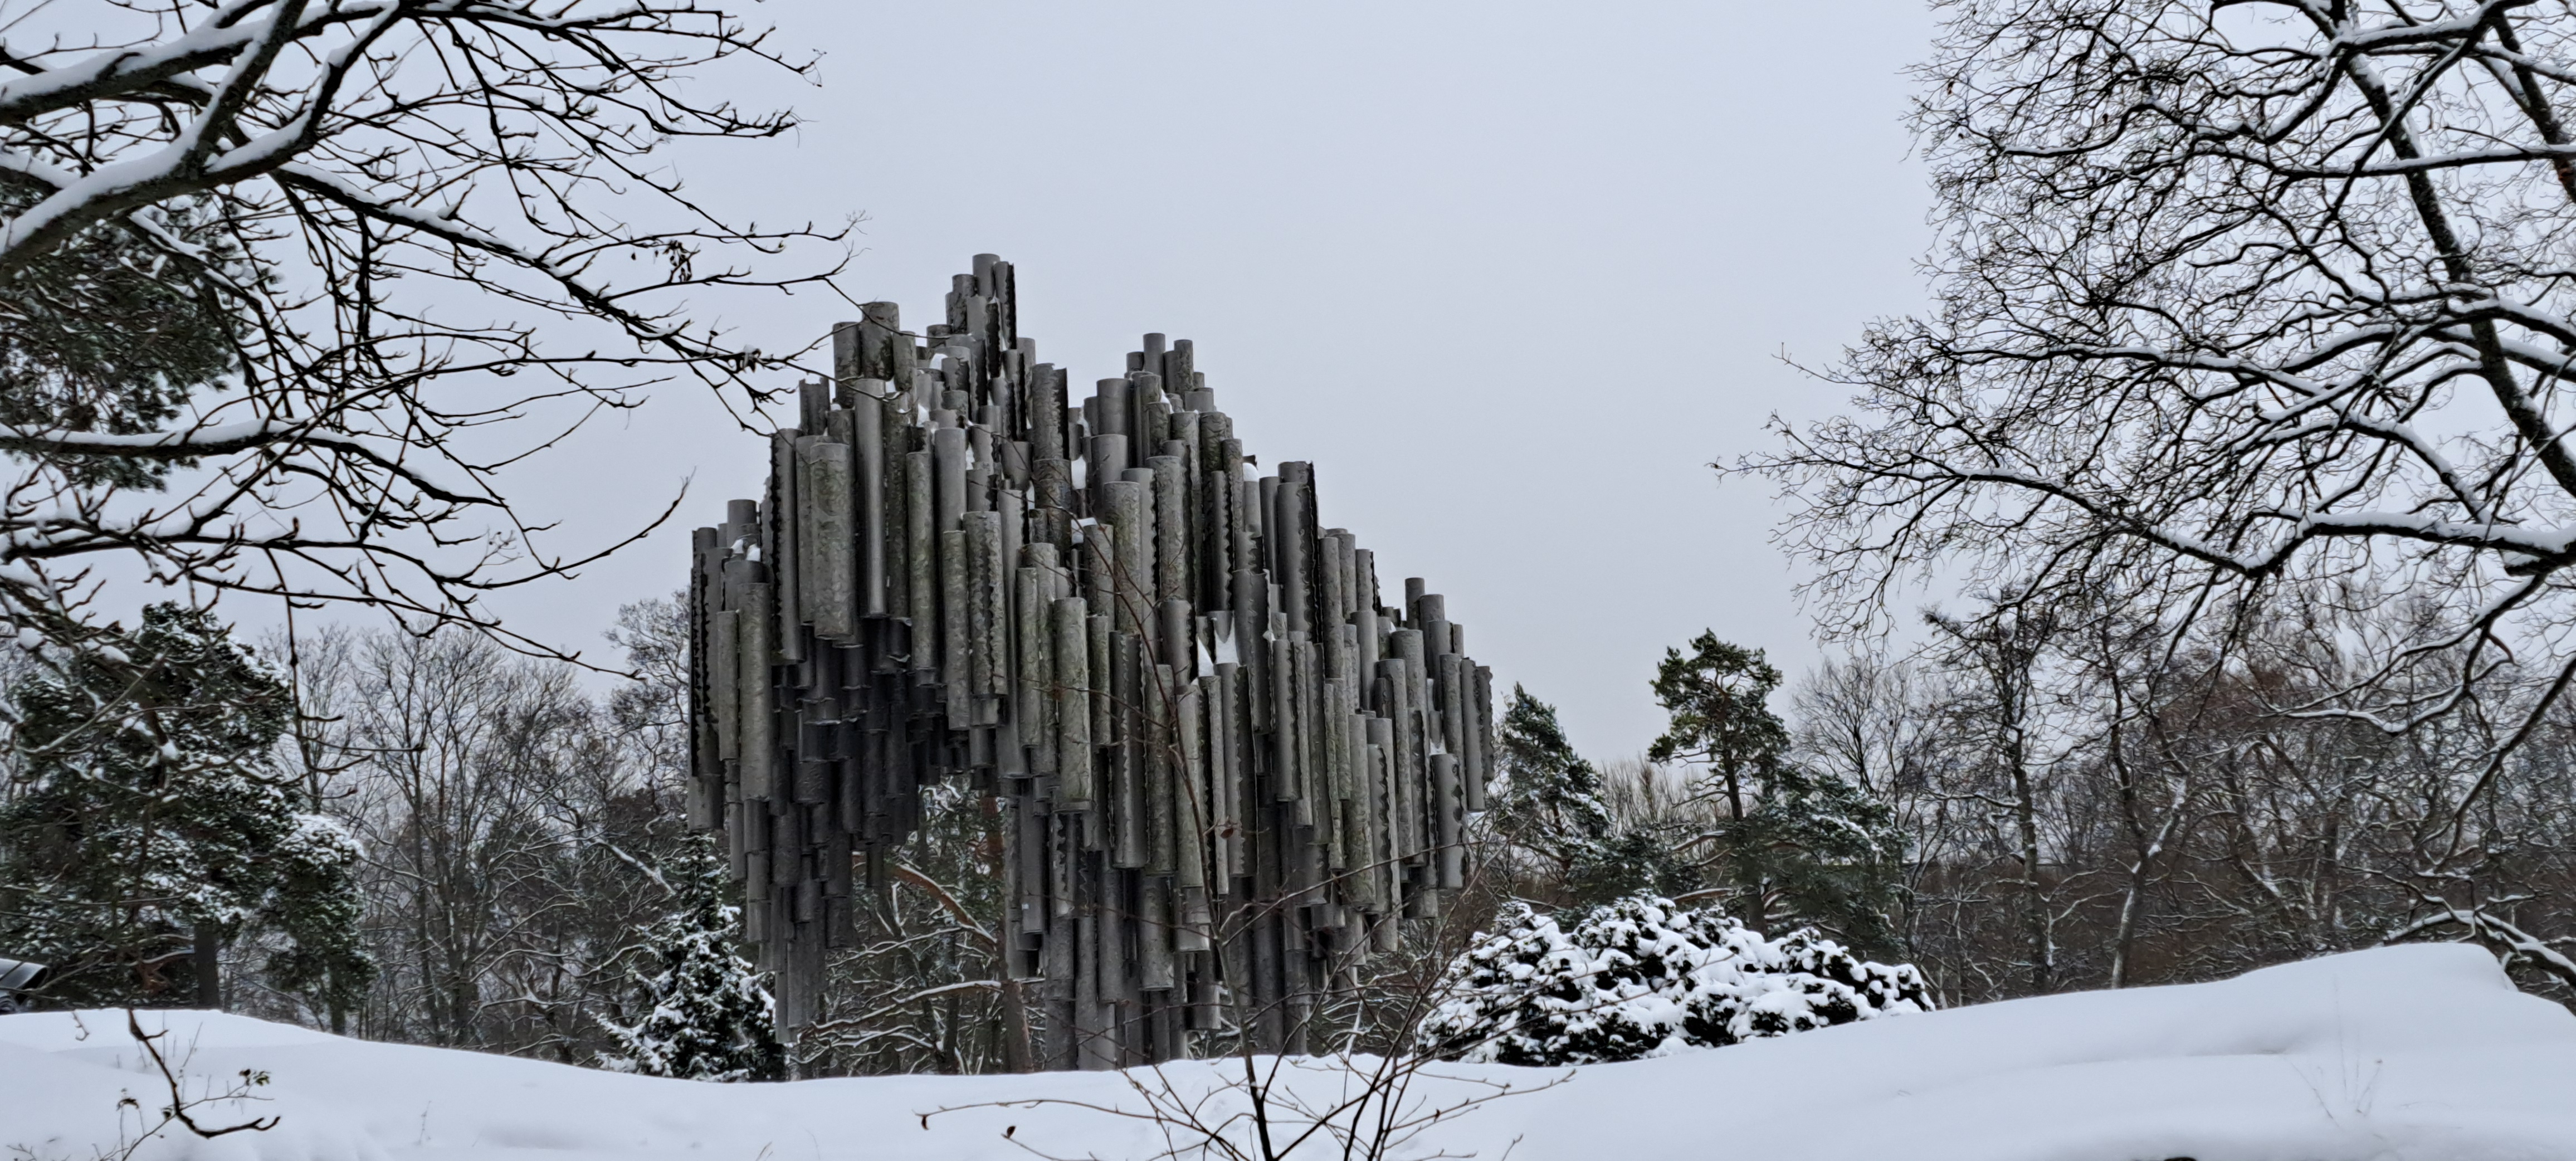 Sibelius Monument, Helsinki